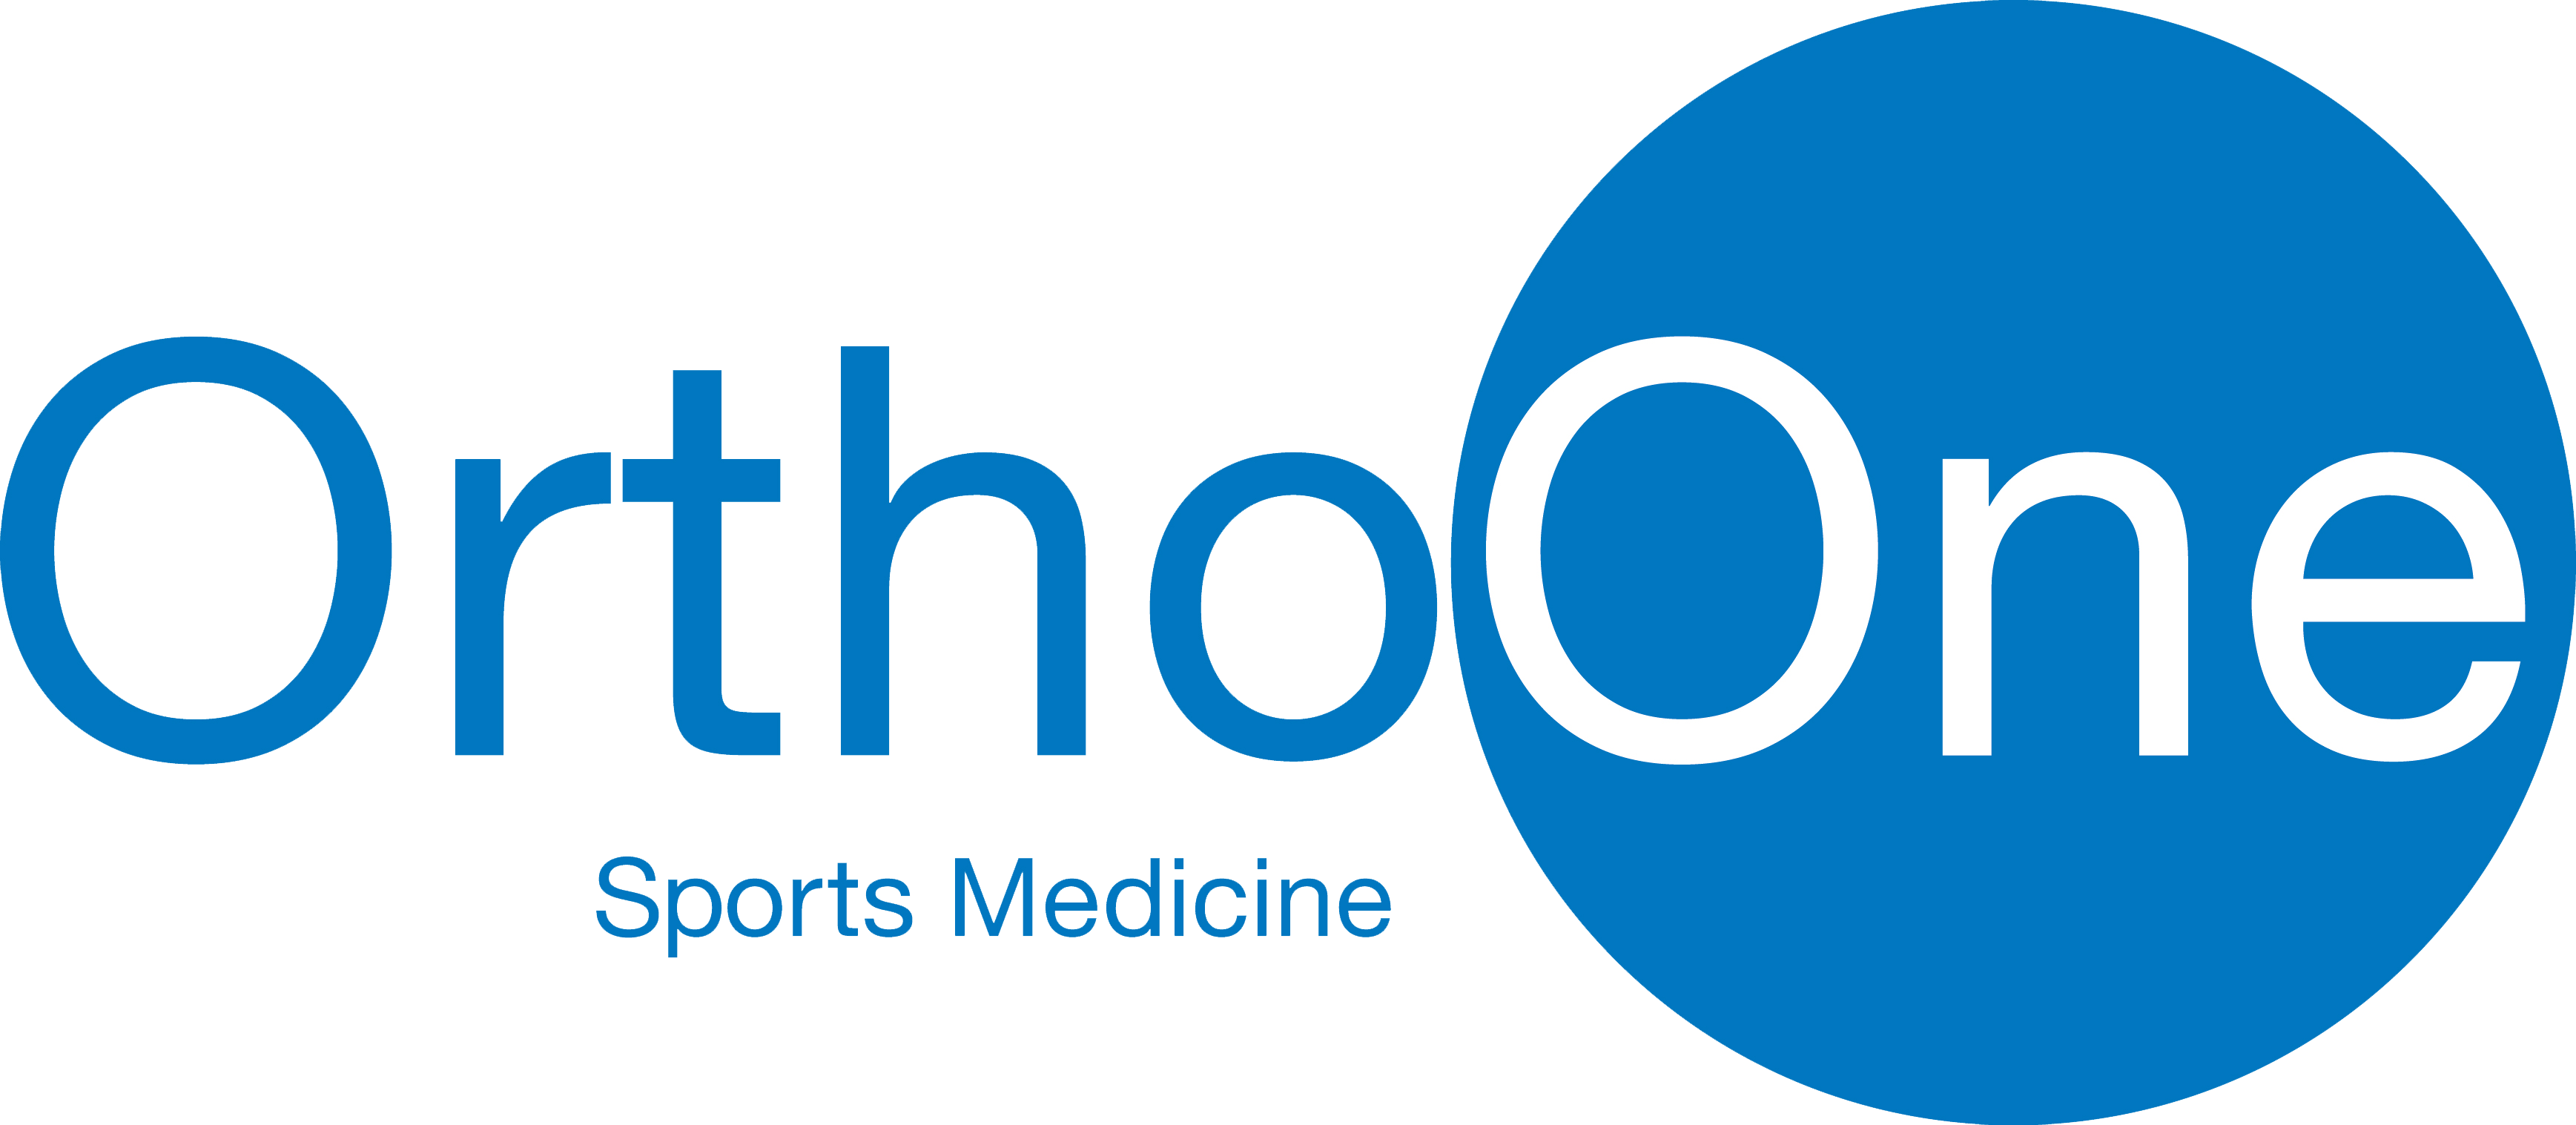 OrthoOne-logo-sports-large